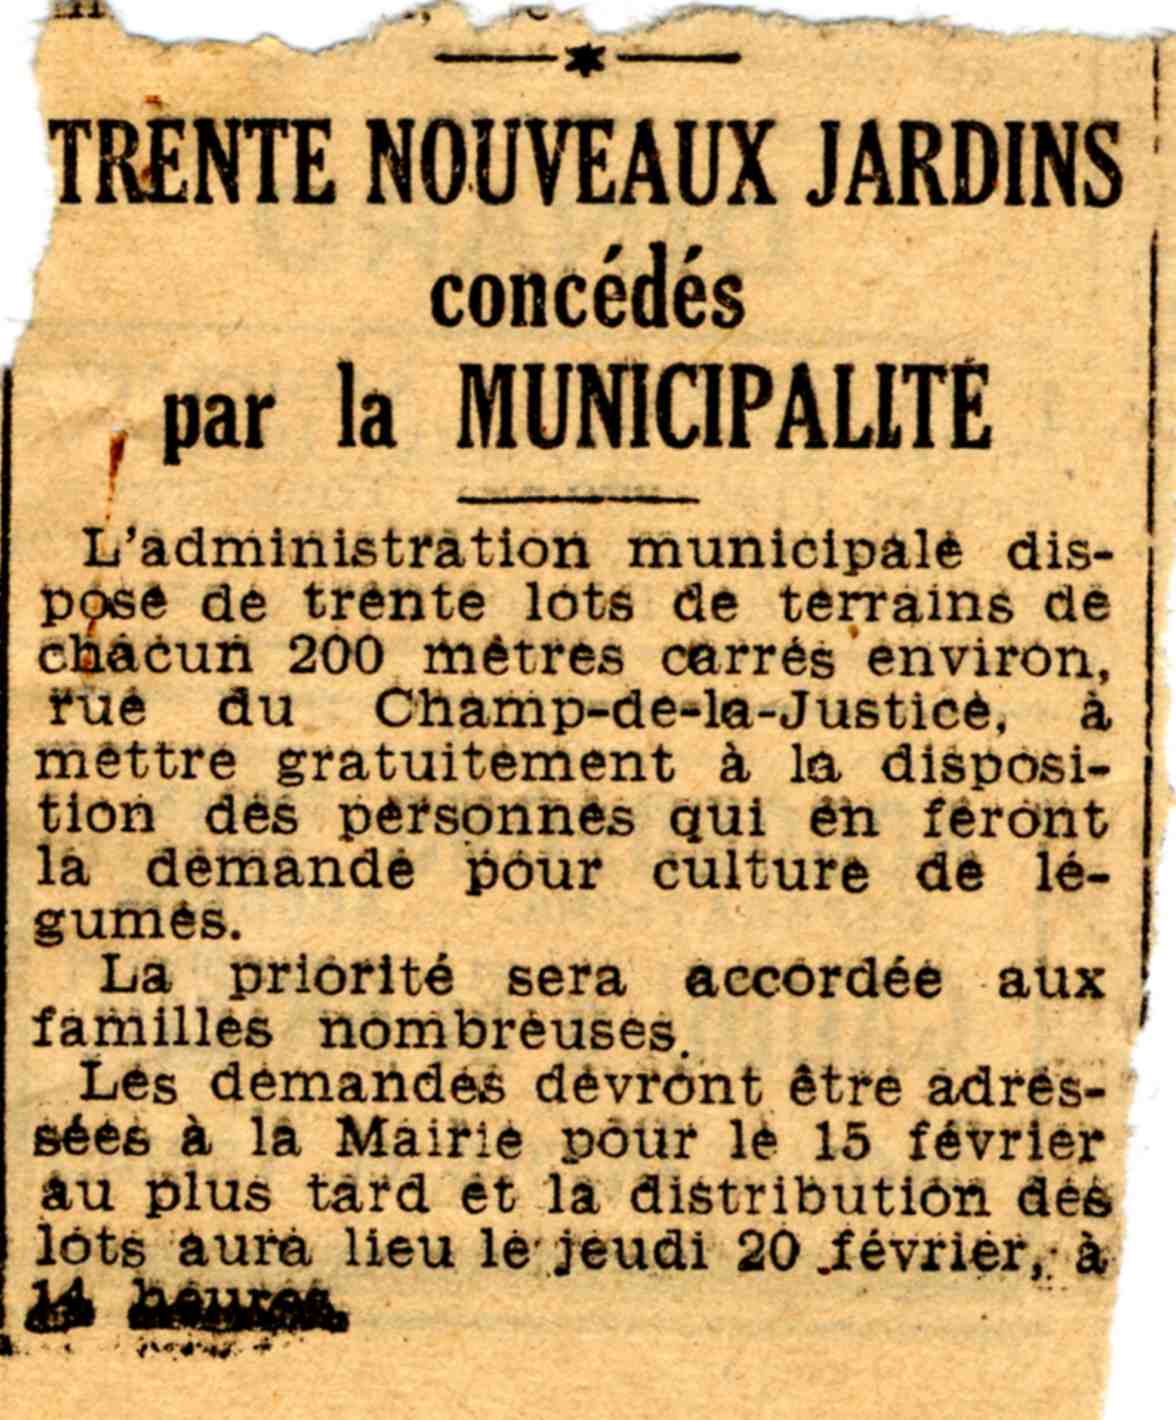 Photo : Pour nourrir les Rennais les plus nécessiteux, la municipalité propose des jardins. Le gouvernement de Vichy de son côté vantait les mérites des jardins familiaux.